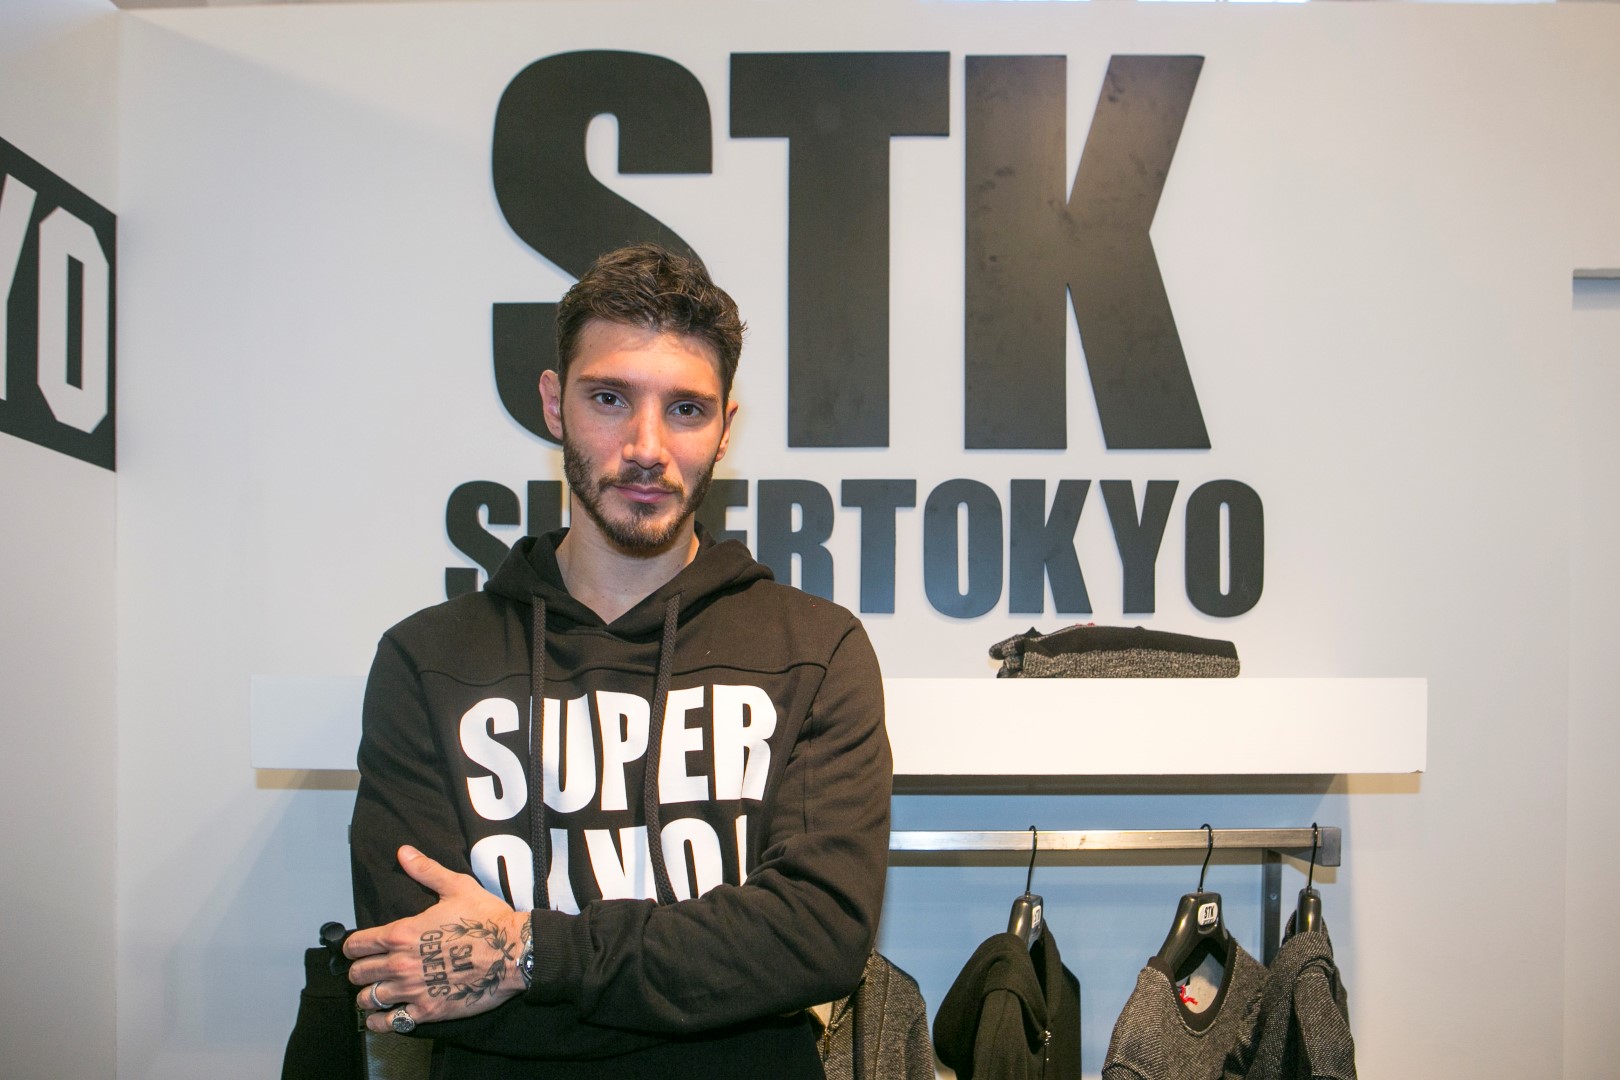 Pitti Uomo Gennaio 2016 Firenze: Stefano de Martino special guest di STK SUPERTOKYO